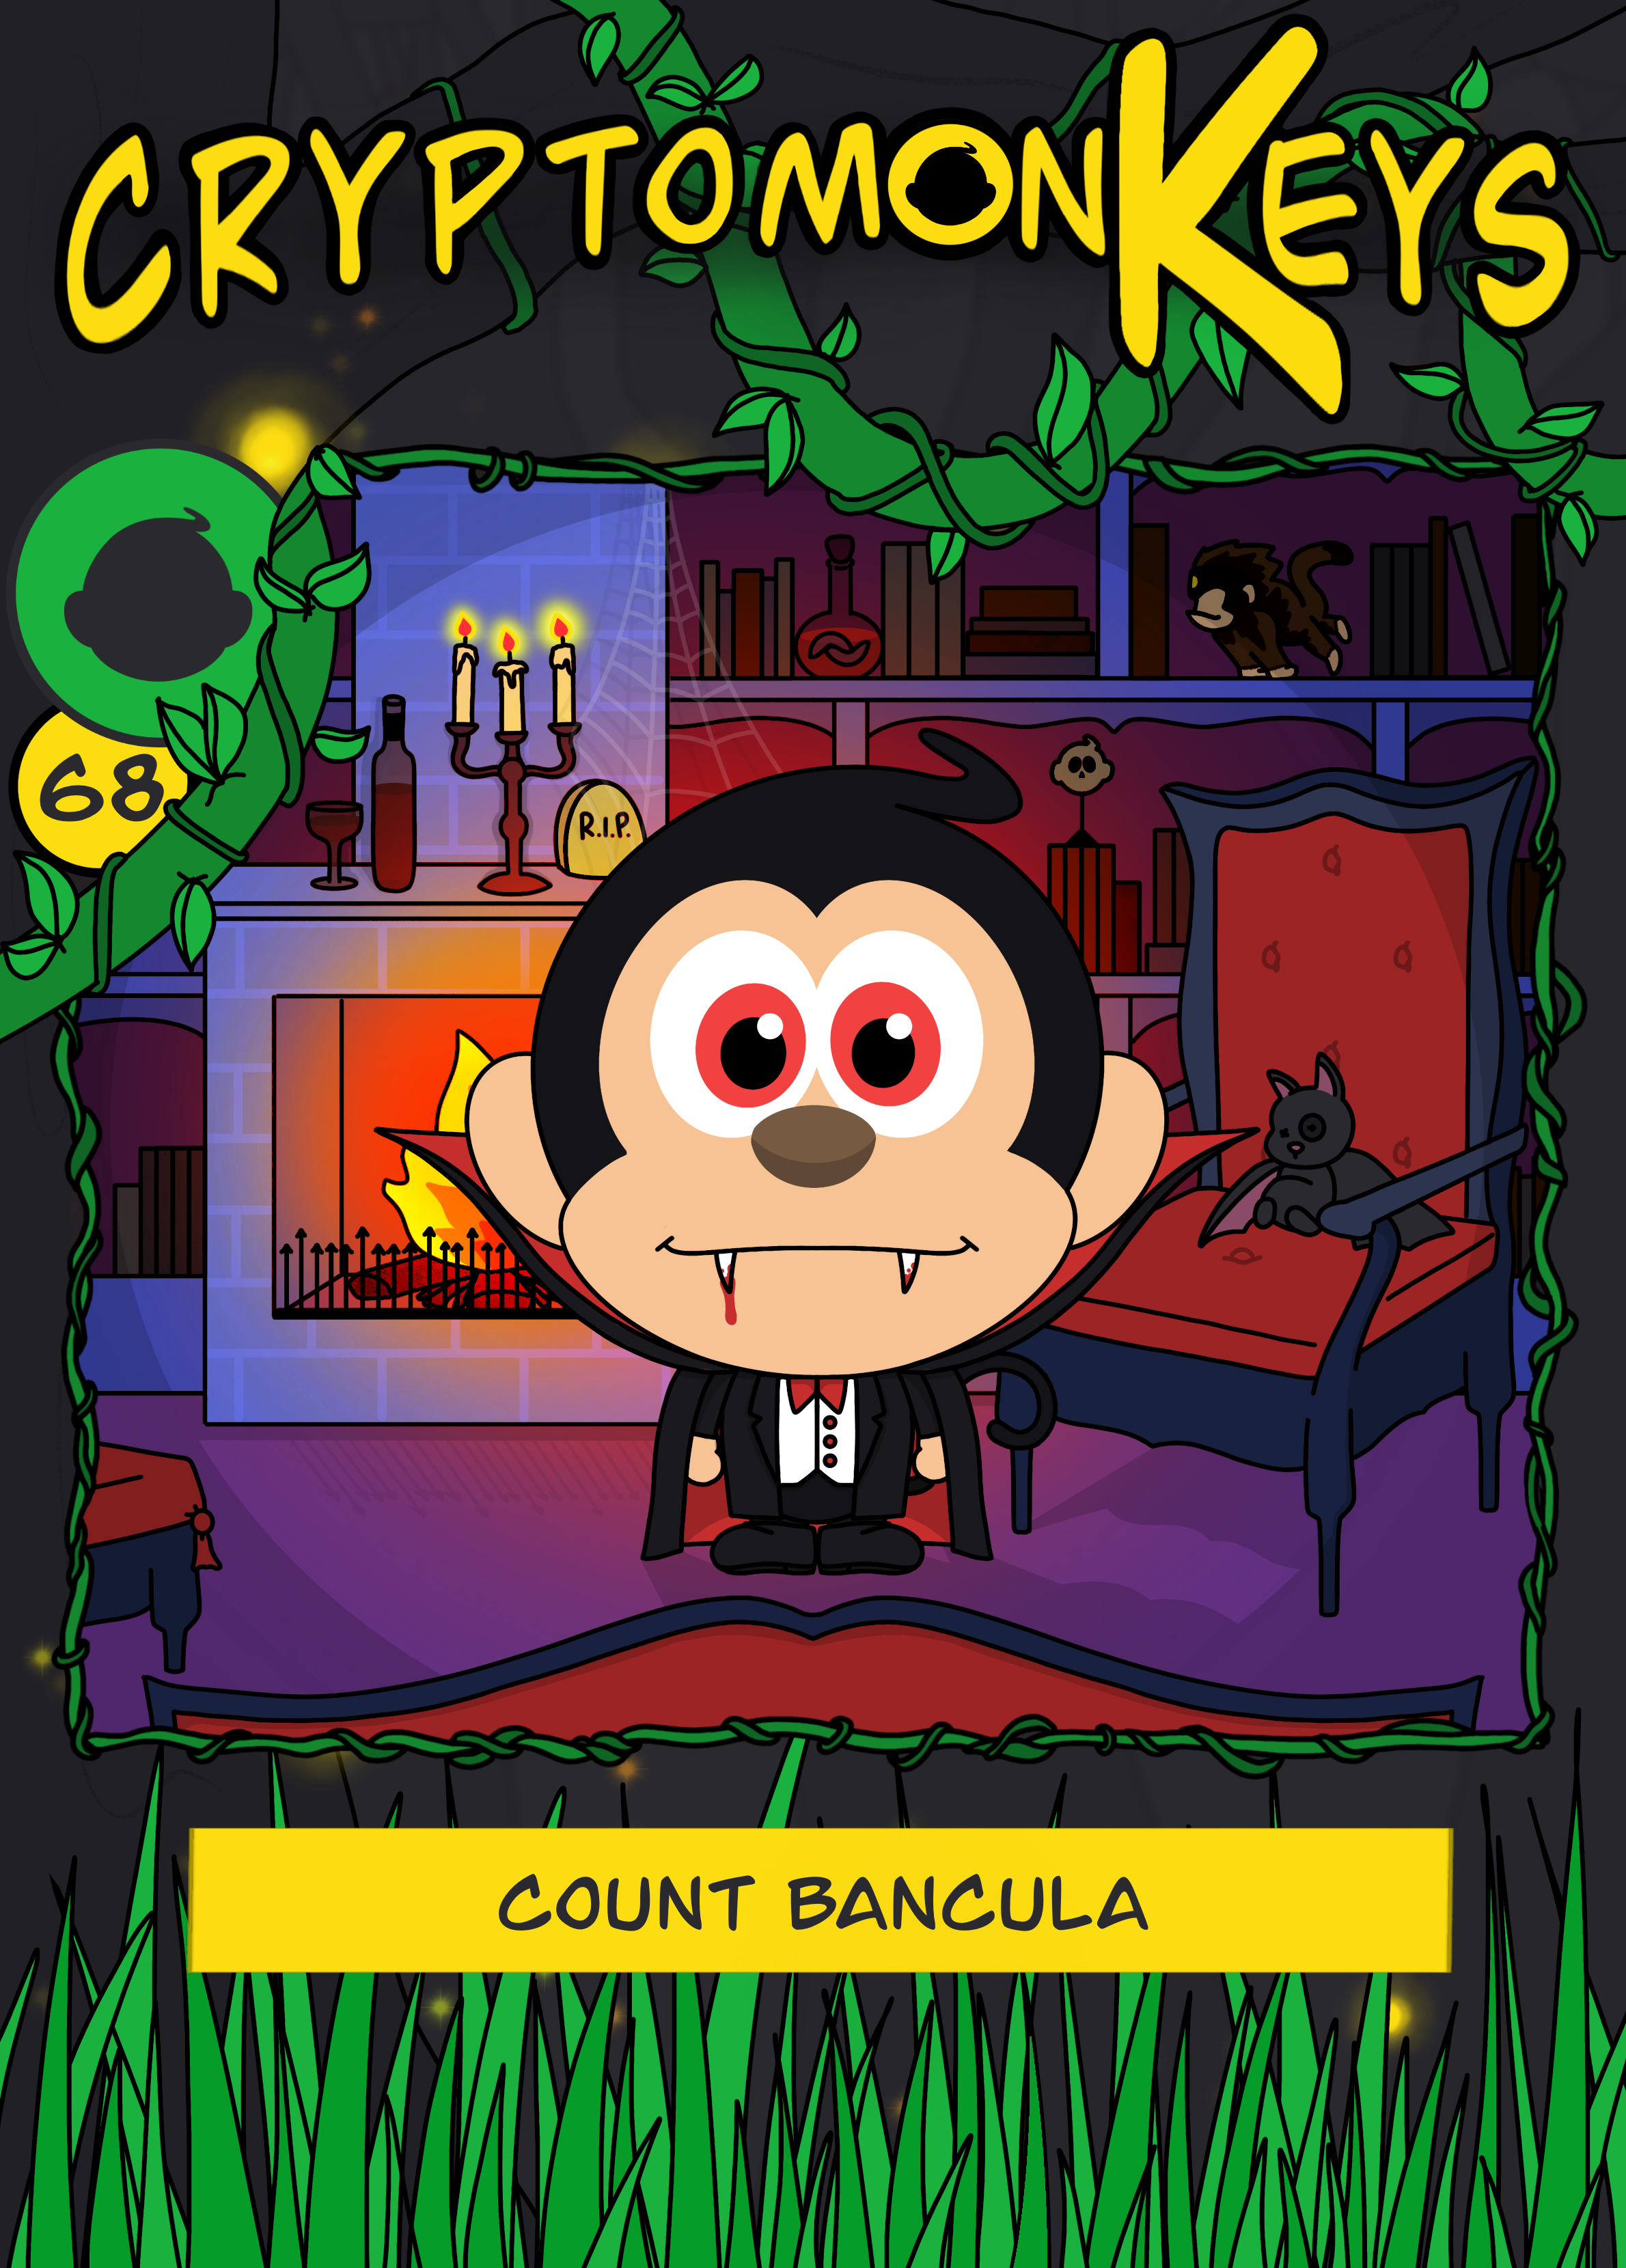 Count Bancula